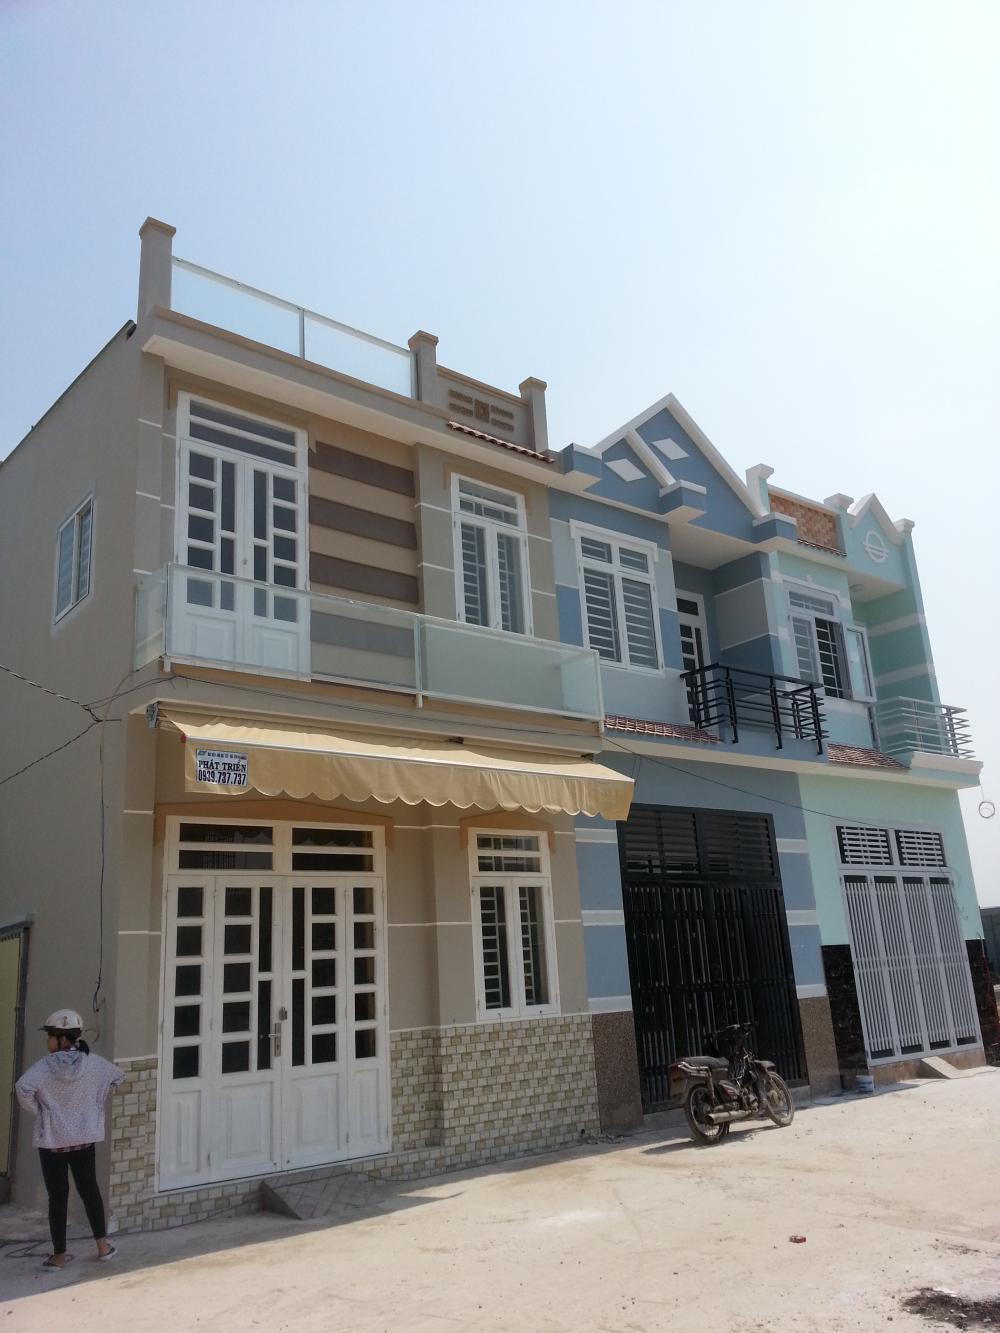 Thêm cơ hội mua nhà tầm trung chỉ 1ty200 triệu/ Căn 1 trệt 1 lầu - Huyện Bình Chánh - Hồ Chí Minh